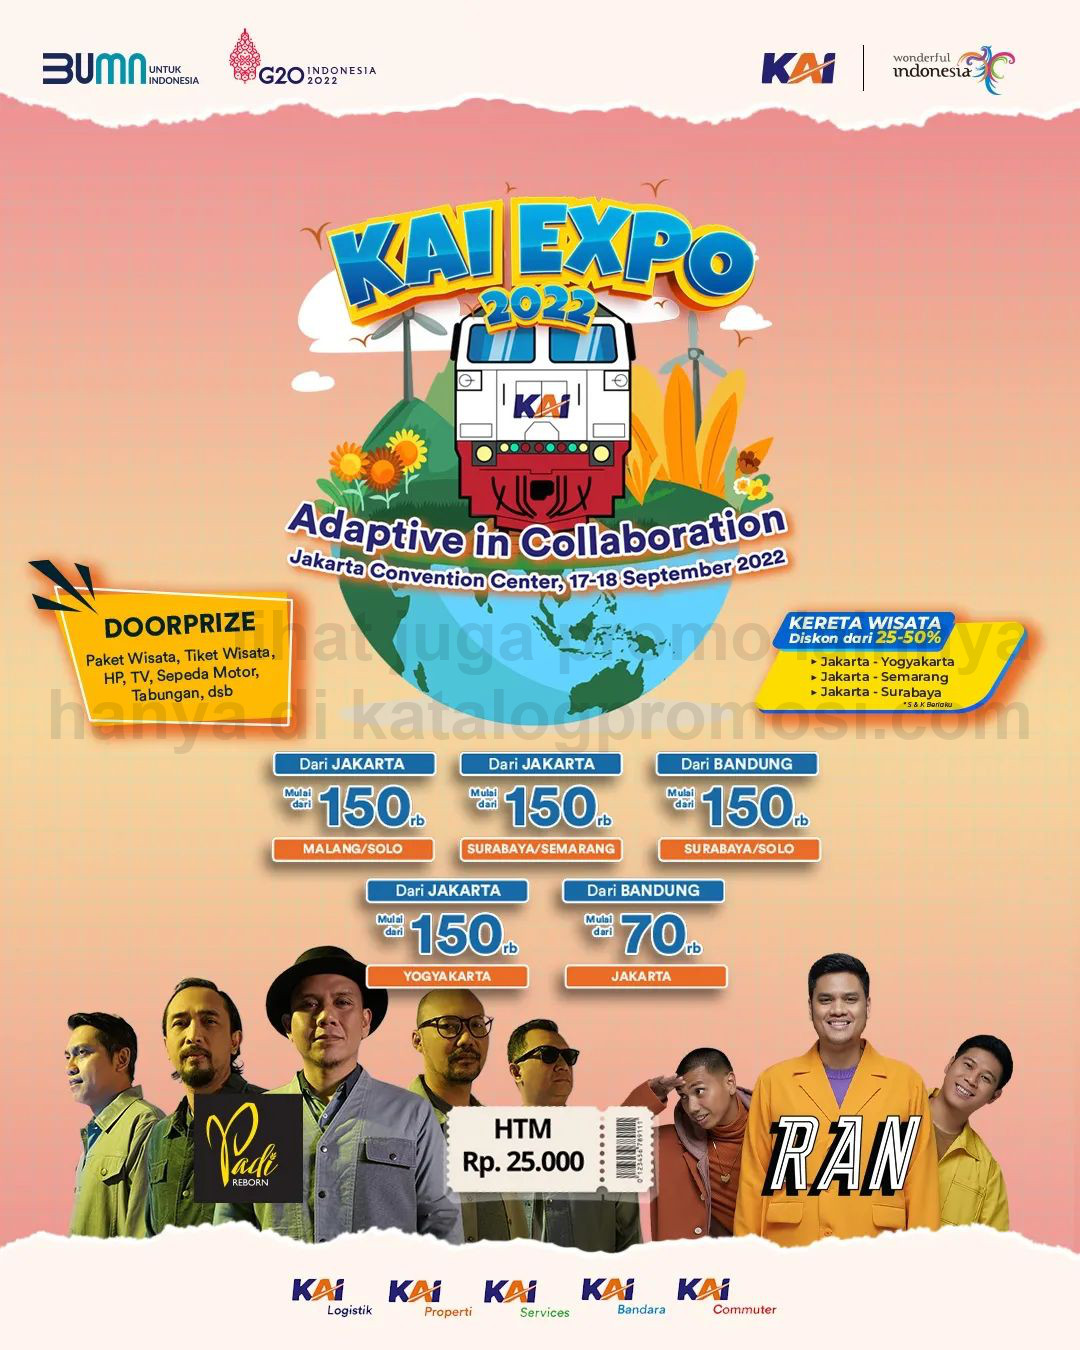 KAI EXPO 2022 mulai tanggal 17-18 September 2022 di Hall B, Jakarta Convention Center